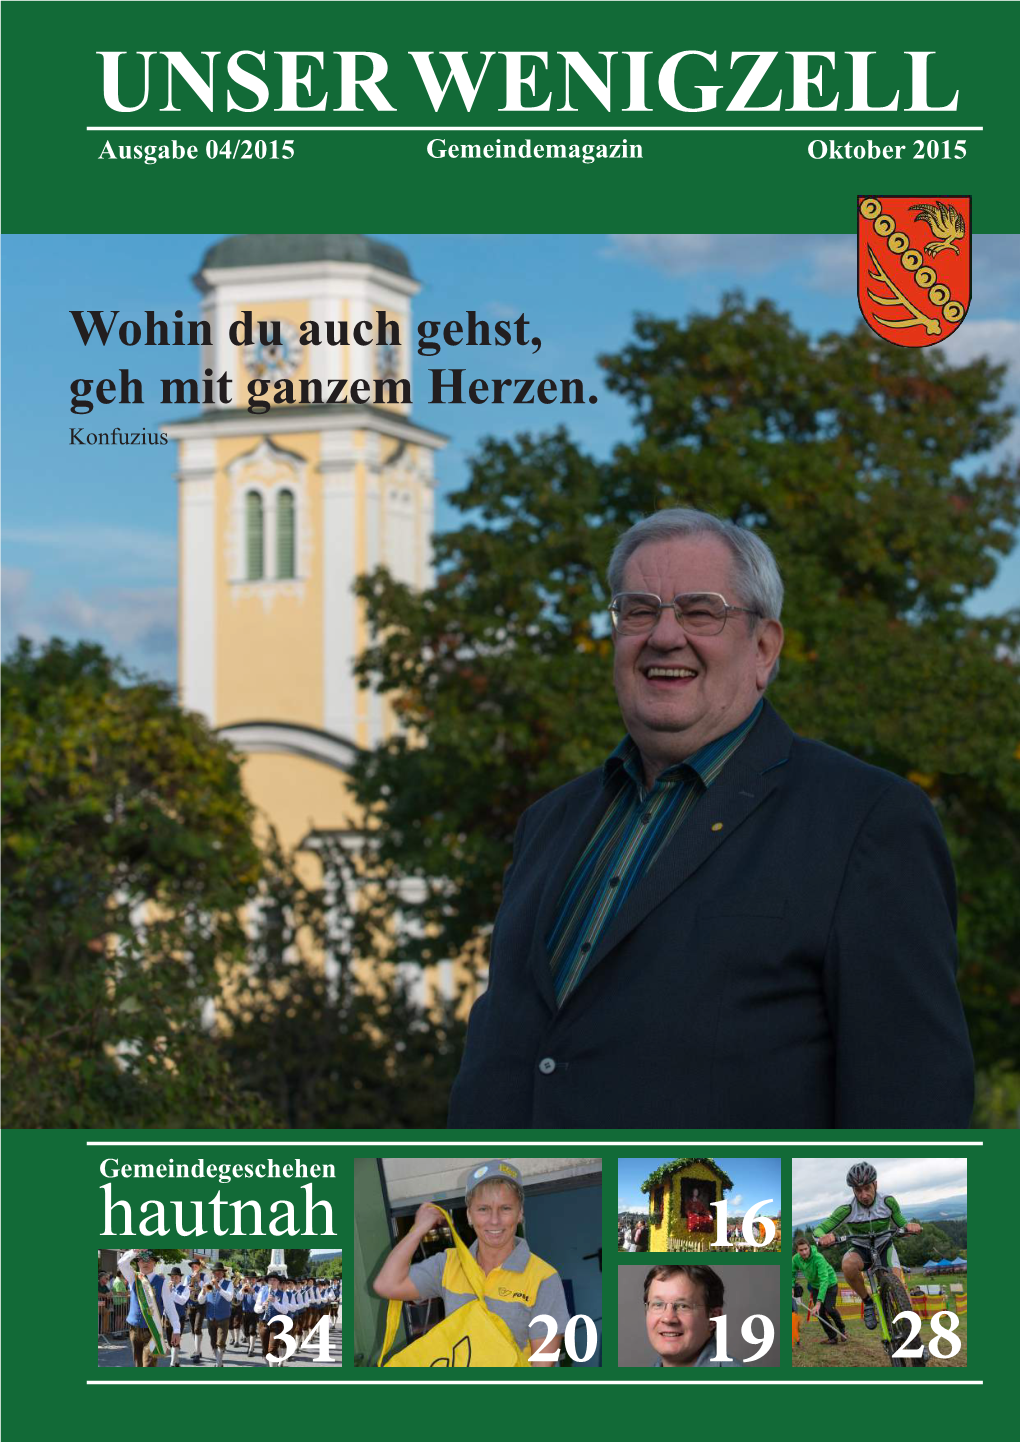 Gemeindezeitung Wenigzell Oktober 2015